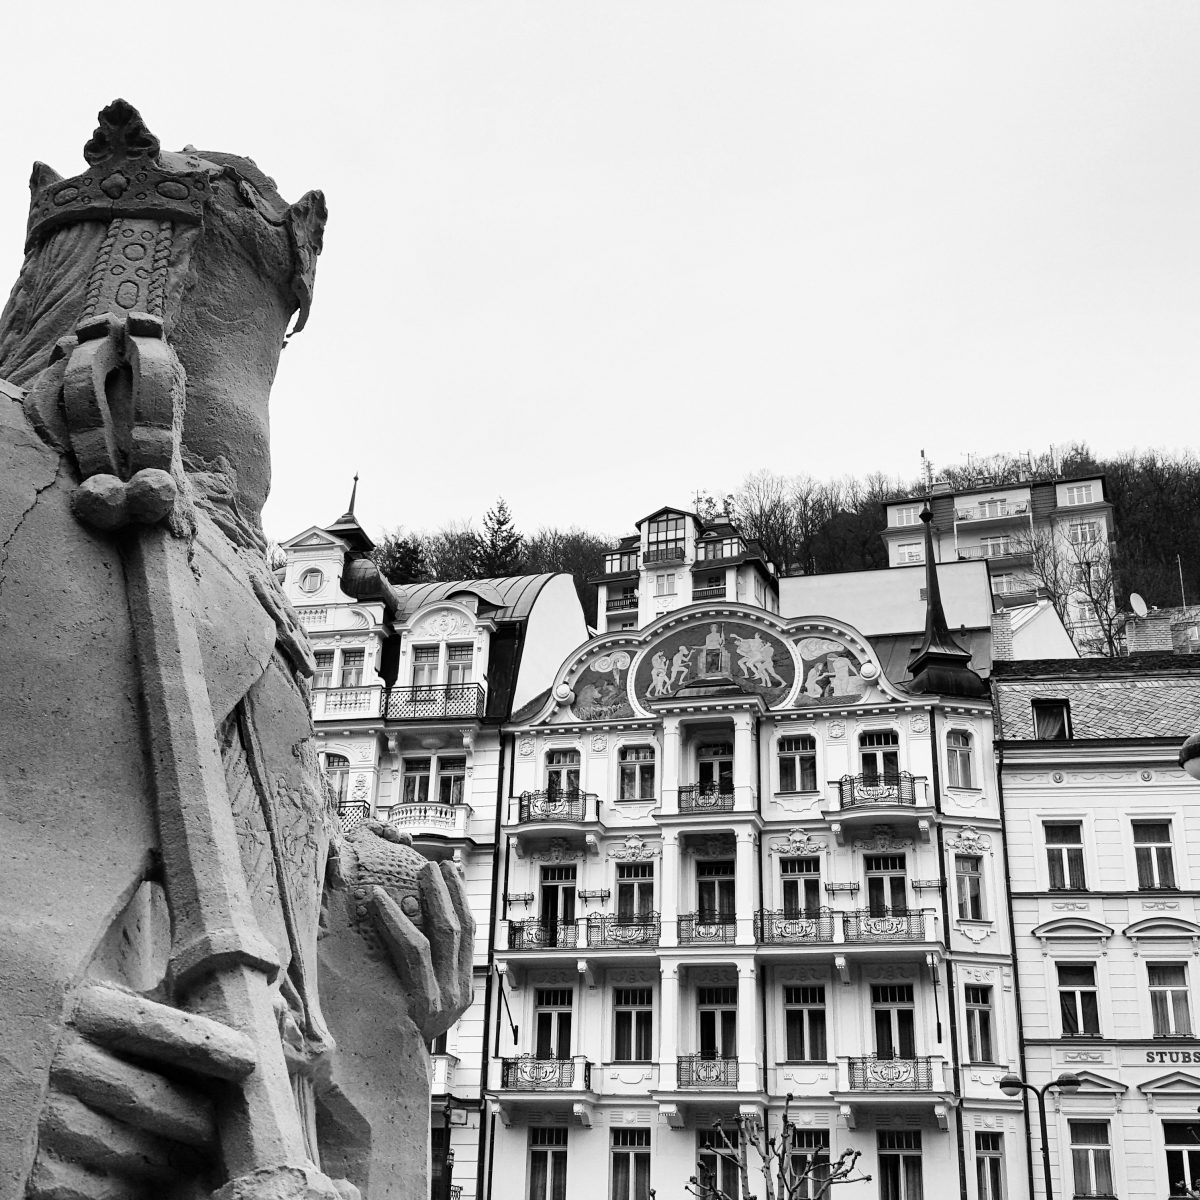 Karlsbad in Tschechien: Die Figur links besteht übrigens aus Sand. Das Gesicht hat sich deshalb schon aufgelöst. (Foto: Michael Voß)